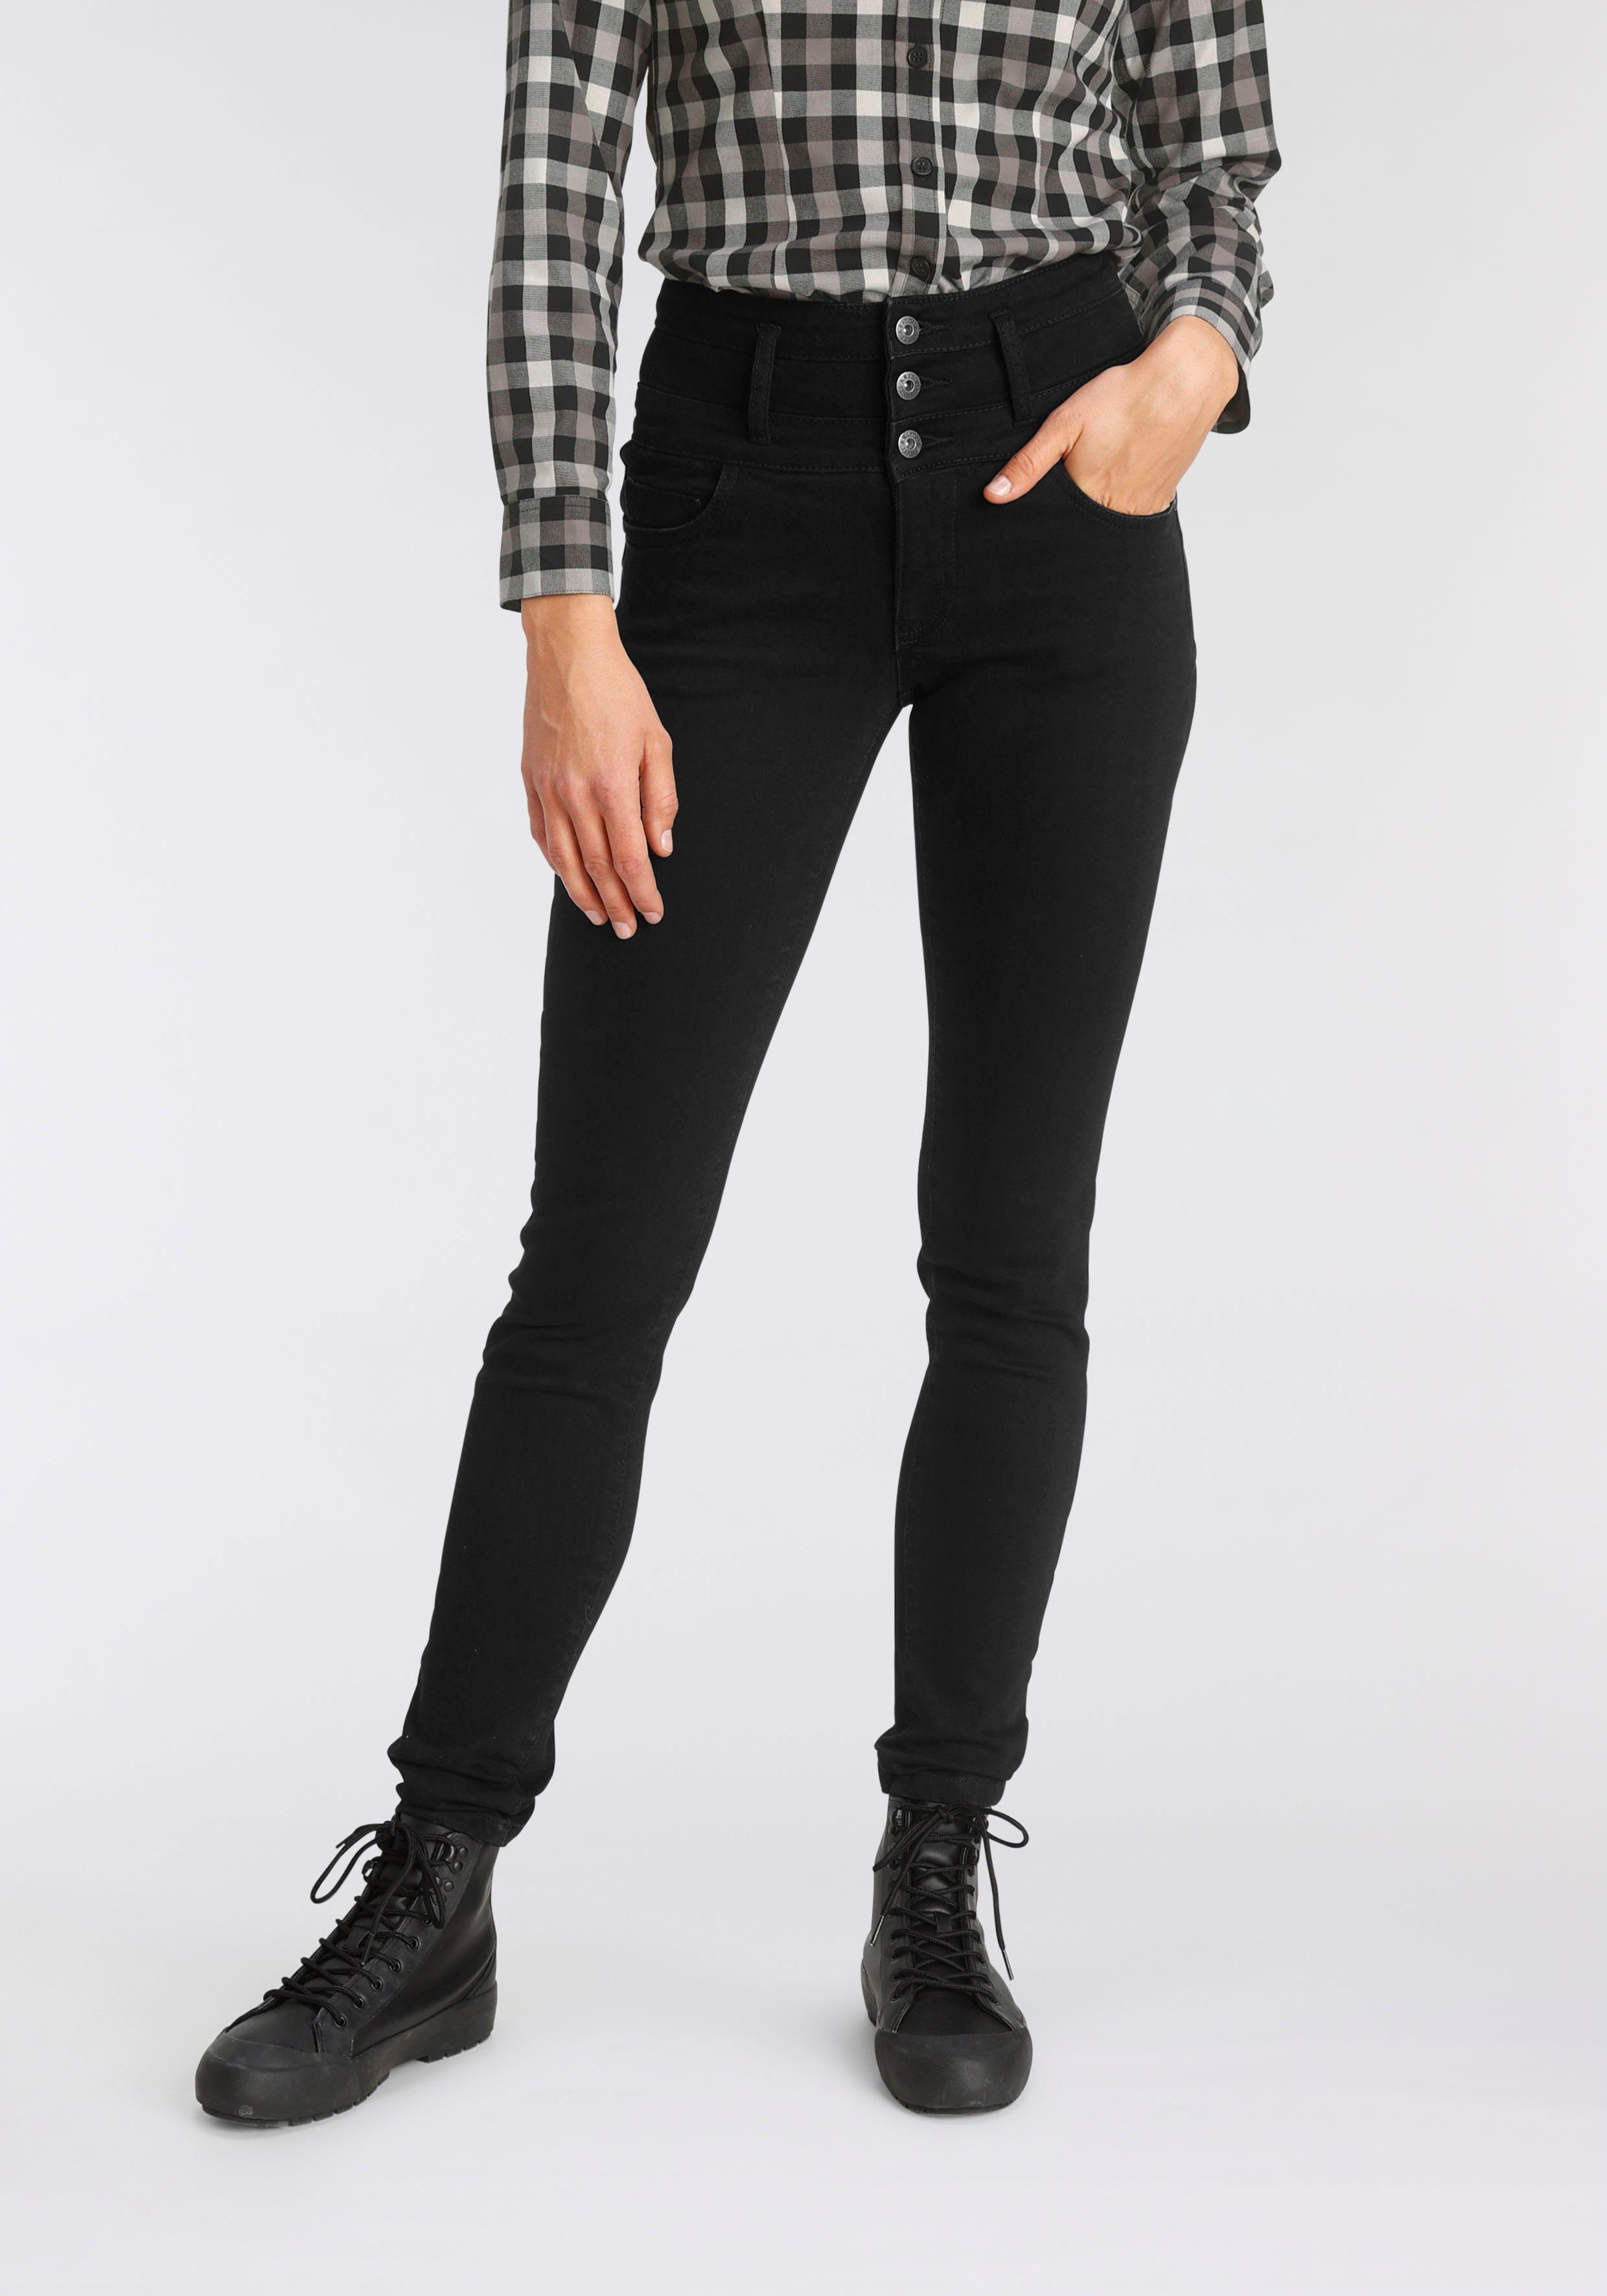 Schwarze High Waist Jeans für Damen online kaufen | OTTO